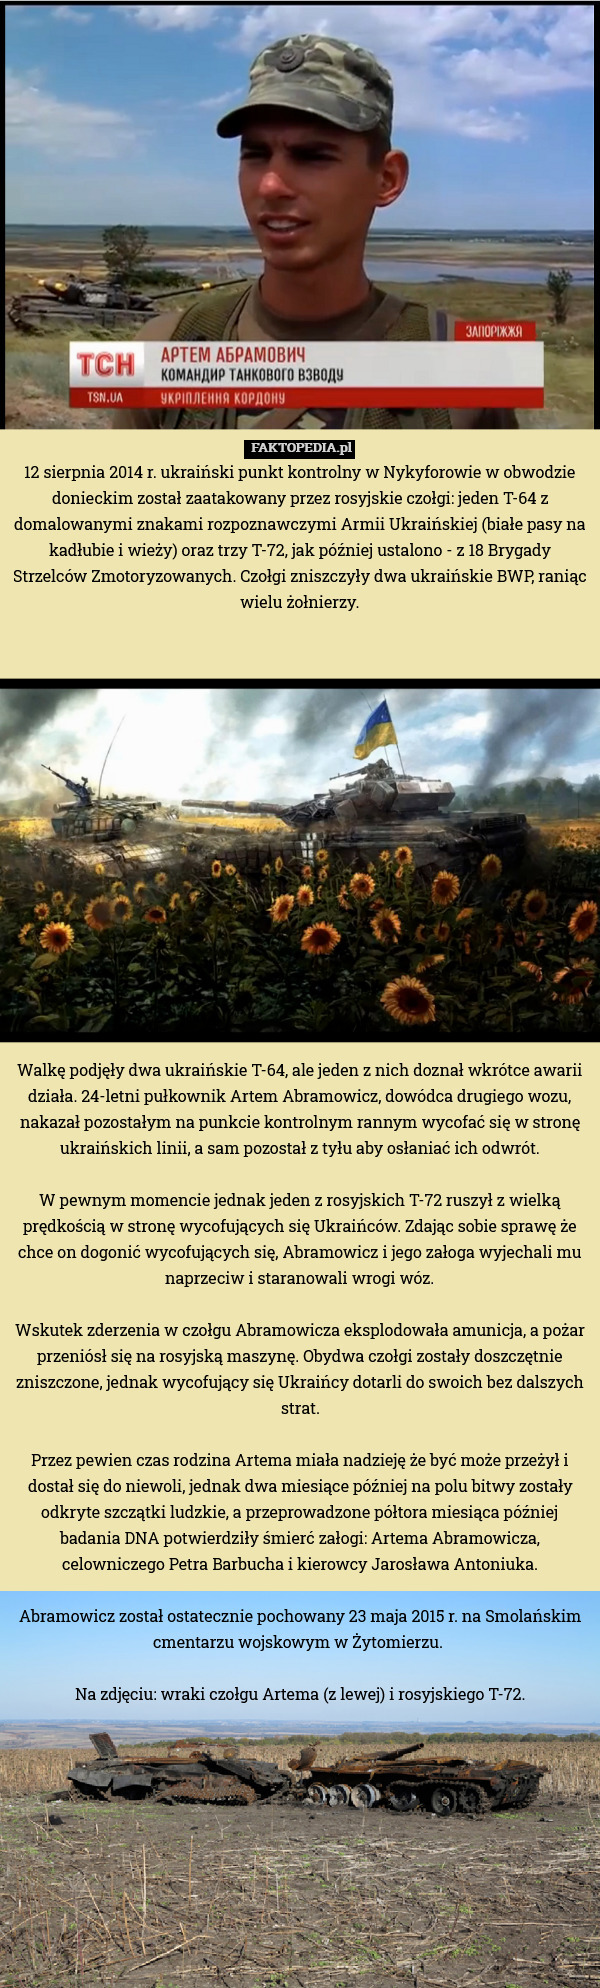 12 sierpnia 2014 r. ukraiński punkt kontrolny w Nykyforowie w obwodzie donieckim został zaatakowany przez rosyjskie czołgi: jeden T-64 z domalowanymi znakami rozpoznawczymi Armii Ukraińskiej (białe pasy na kadłubie i wieży) oraz trzy T-72, jak później ustalono - z 18 Brygady Strzelców Zmotoryzowanych. Czołgi zniszczyły dwa ukraińskie BWP, raniąc wielu żołnierzy.

















Walkę podjęły dwa ukraińskie T-64, ale jeden z nich doznał wkrótce awarii działa. 24-letni pułkownik Artem Abramowicz, dowódca drugiego wozu, nakazał pozostałym na punkcie kontrolnym rannym wycofać się w stronę ukraińskich linii, a sam pozostał z tyłu aby osłaniać ich odwrót.

W pewnym momencie jednak jeden z rosyjskich T-72 ruszył z wielką prędkością w stronę wycofujących się Ukraińców. Zdając sobie sprawę że chce on dogonić wycofujących się, Abramowicz i jego załoga wyjechali mu naprzeciw i staranowali wrogi wóz.

Wskutek zderzenia w czołgu Abramowicza eksplodowała amunicja, a pożar przeniósł się na rosyjską maszynę. Obydwa czołgi zostały doszczętnie zniszczone, jednak wycofujący się Ukraińcy dotarli do swoich bez dalszych strat.

Przez pewien czas rodzina Artema miała nadzieję że być może przeżył i dostał się do niewoli, jednak dwa miesiące później na polu bitwy zostały odkryte szczątki ludzkie, a przeprowadzone półtora miesiąca później badania DNA potwierdziły śmierć załogi: Artema Abramowicza, celowniczego Petra Barbucha i kierowcy Jarosława Antoniuka.

Abramowicz został ostatecznie pochowany 23 maja 2015 r. na Smolańskim cmentarzu wojskowym w Żytomierzu. 

Na zdjęciu: wraki czołgu Artema (z lewej) i rosyjskiego T-72. 